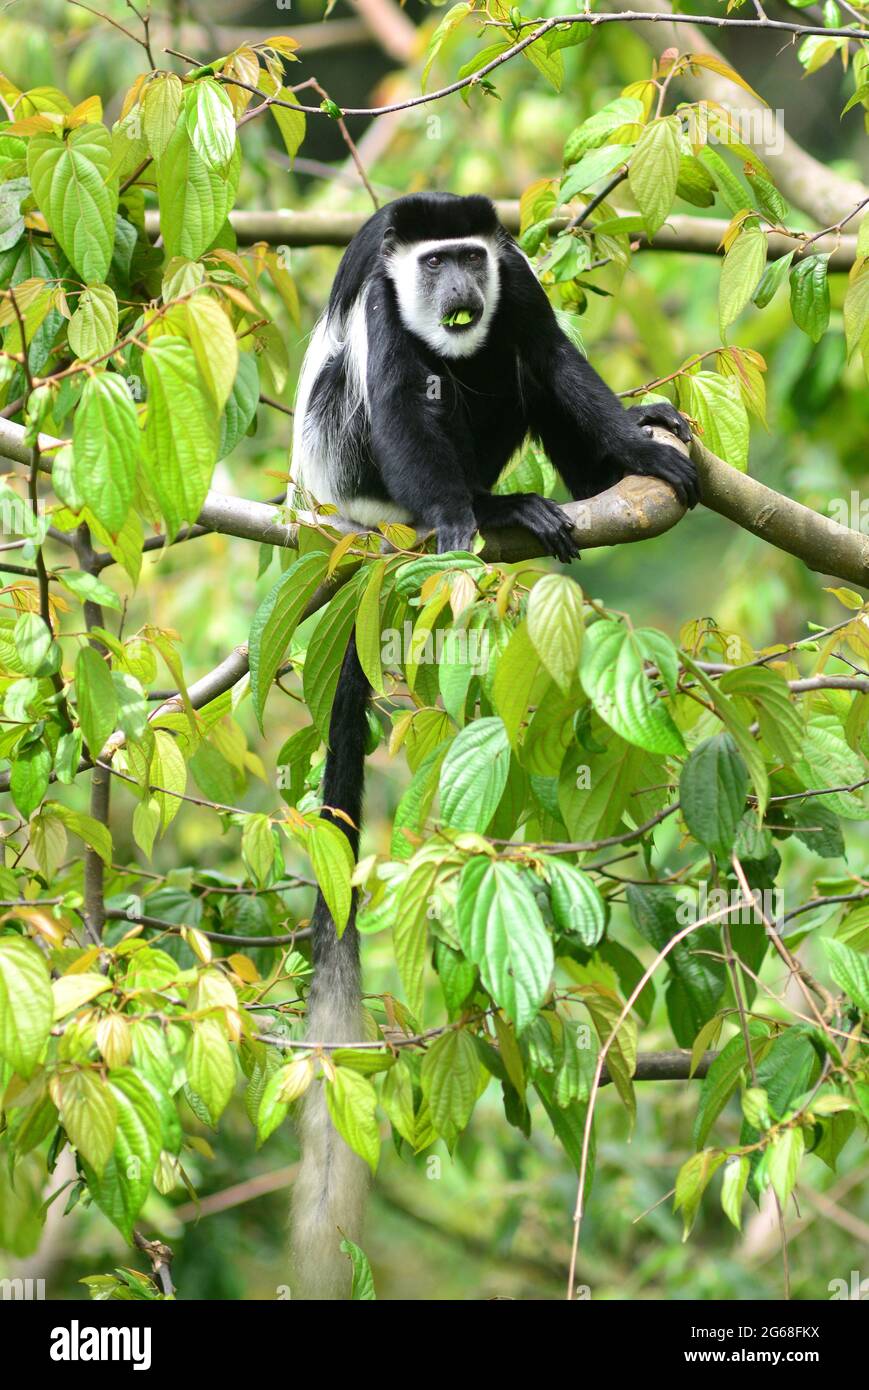 UGANDA. NATIONAL PARK OF BWINDI. COLOBUS MONKEY EATING LEAVES IN THE FOREST OF BWINDI. Stock Photo